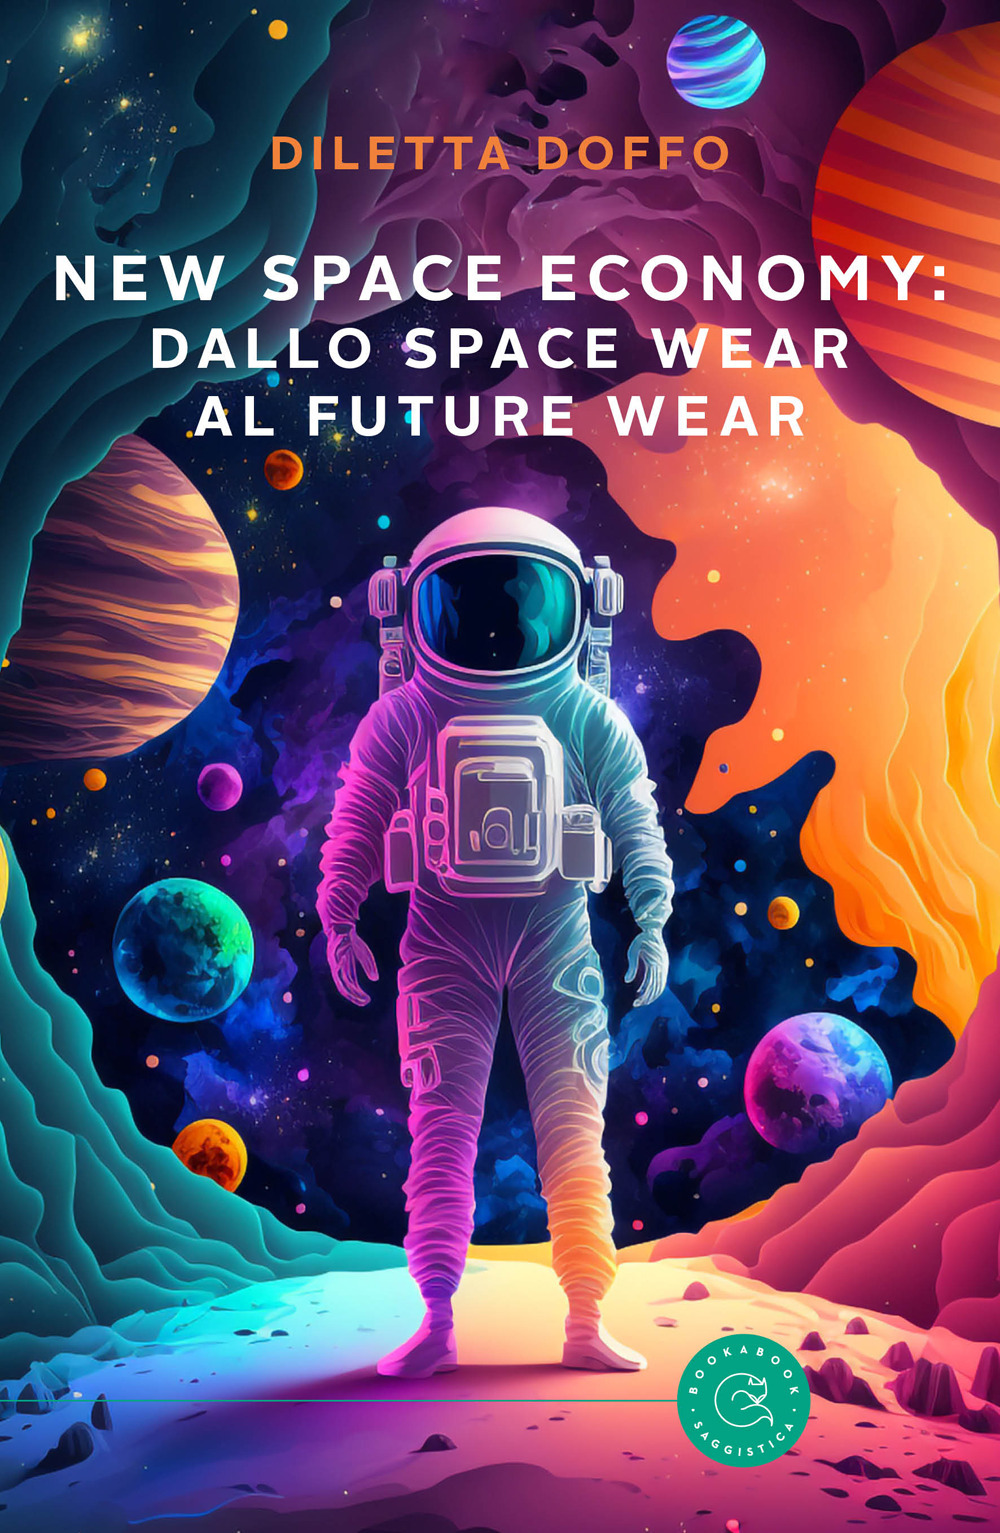 New Space Economy: dallo space wear al future wear. Ovvero come gli studi sull'abbigliamento degli astronauti nello spazio finiranno per migliorare la vita sulla Terra